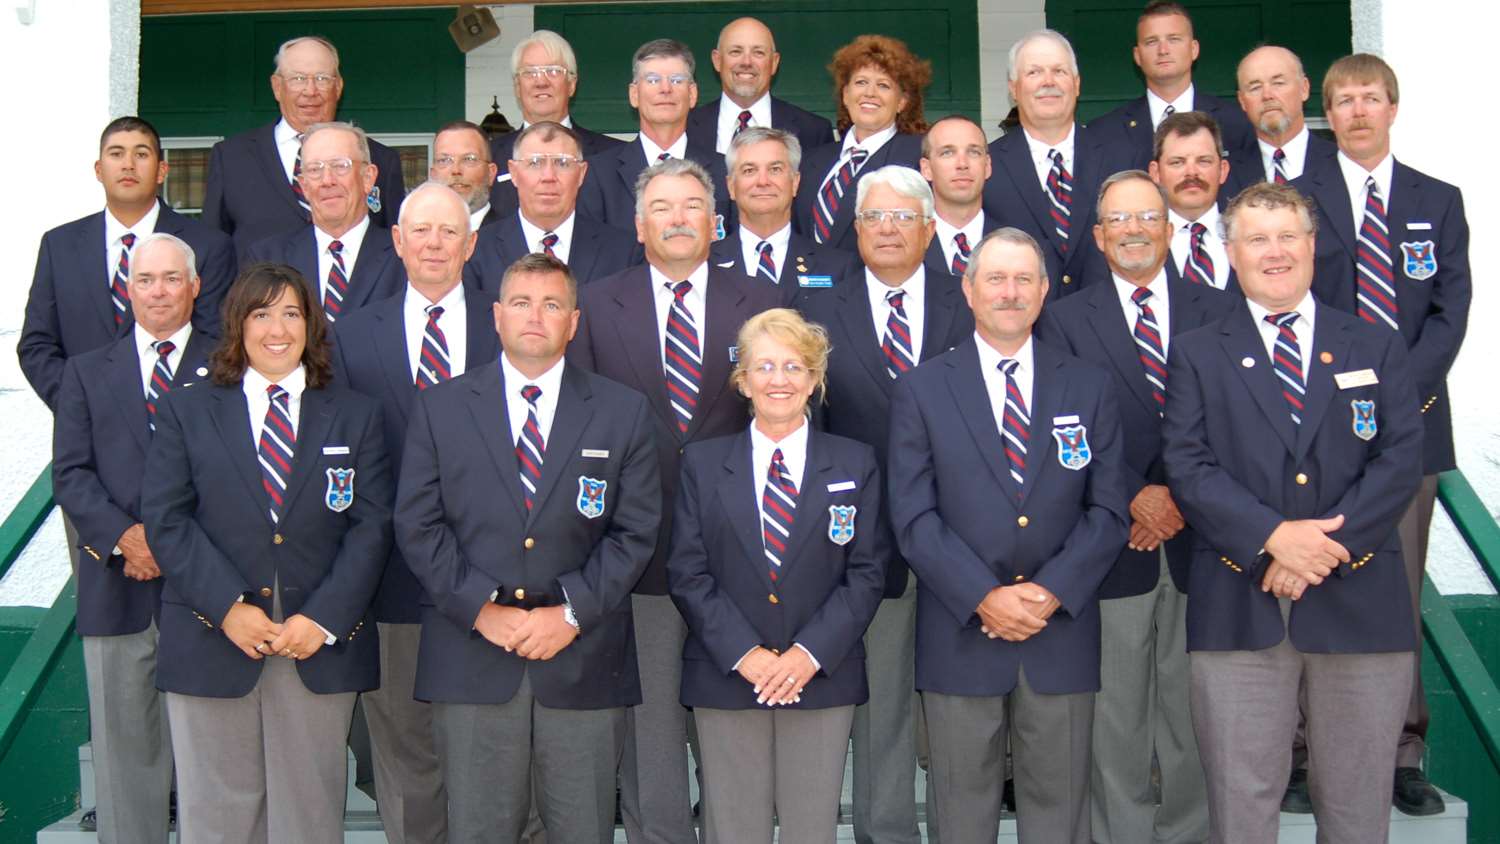 2007 U.S. Palma Team in Canada